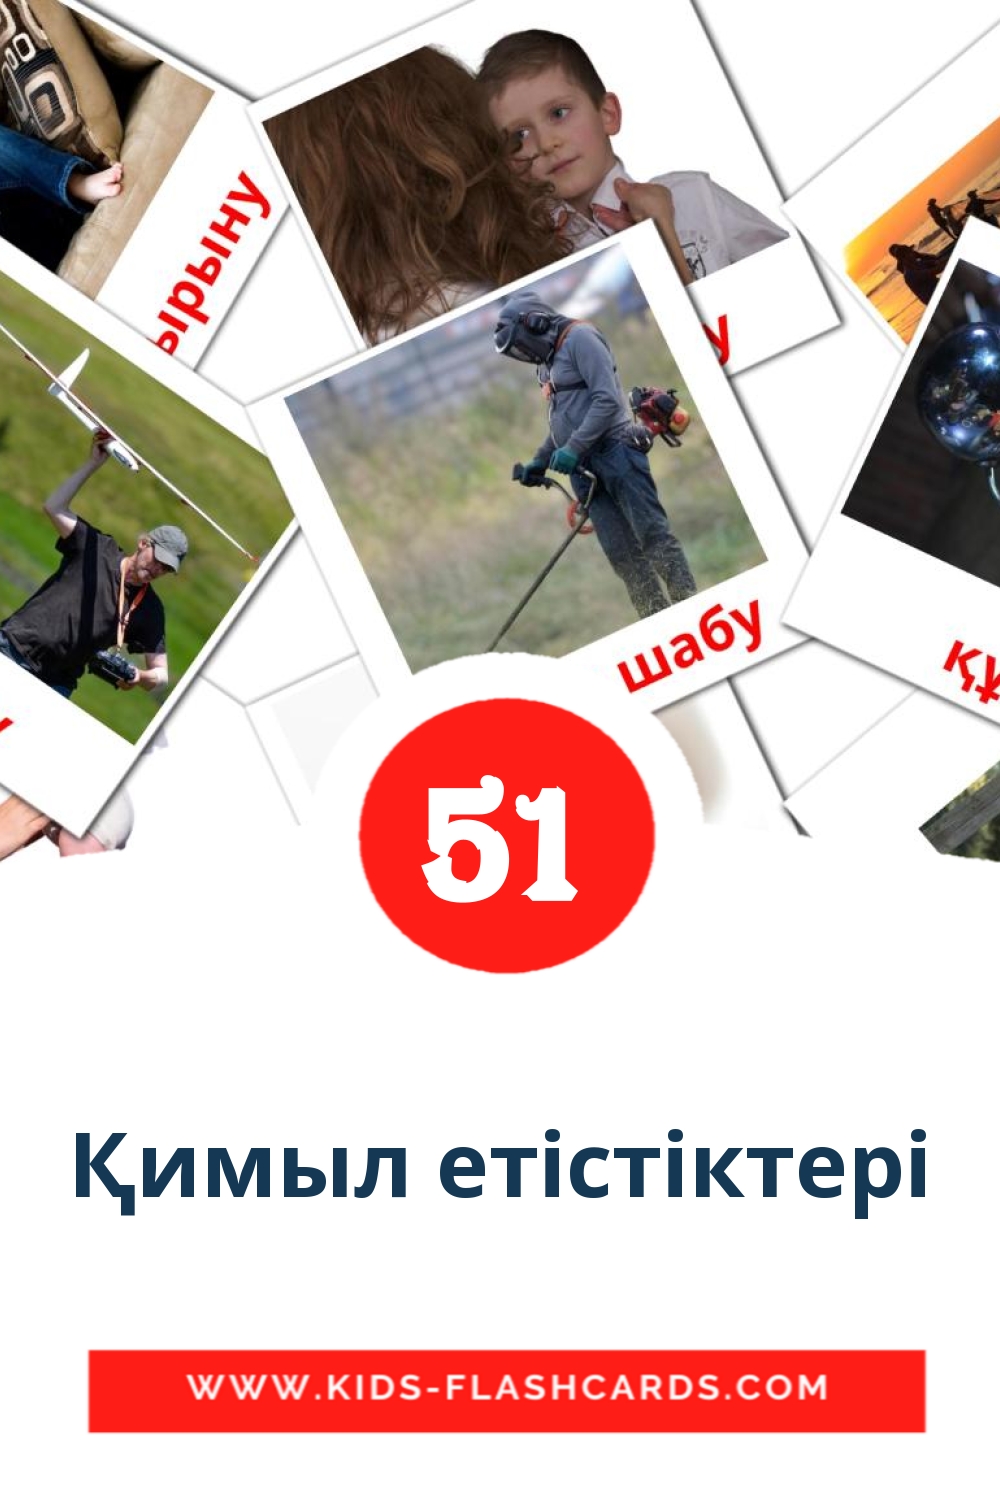 54 tarjetas didacticas de Қимыл етістіктері para el jardín de infancia en kazajo